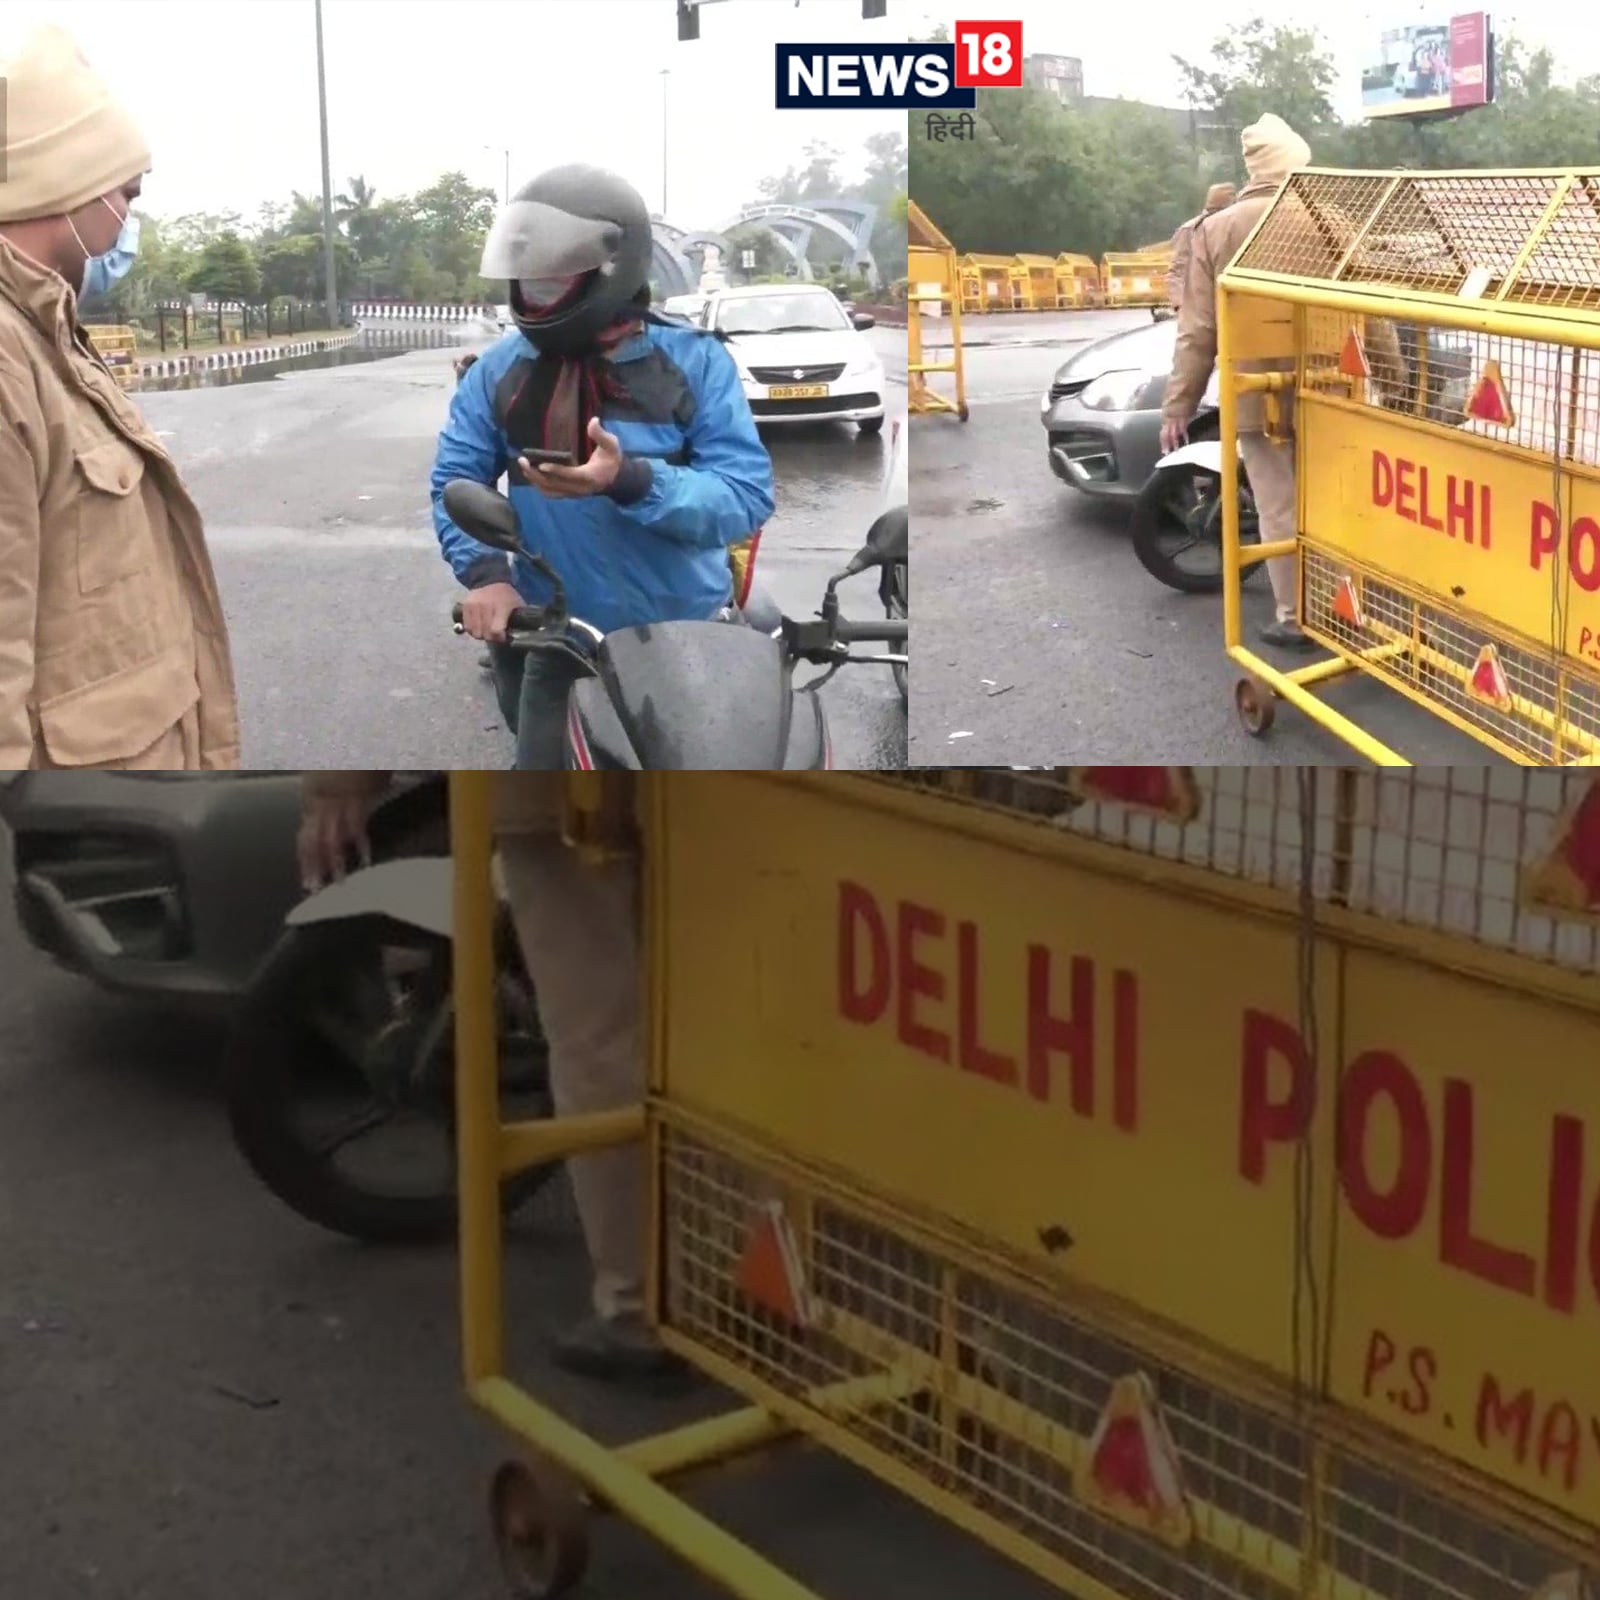 capital, Delhi-NCR, robbers, robbing, bicycle, rider, four wheelers, Car, cyclist, Dwarka North police station, Delhi Police, fir, rakesh asthana, दिल्ली में साइकिल सवार से लूट, कार सवार ने लूटा मोबाइल, दिल्ली पुलिस, दिल्ली में कानून की स्थिति क्या है, राकेश अस्थाना, दिल्ली पुलिस के कमिश्नर राकेश अस्थाना, देश की राजधानी दिल्ली-एनसीआर